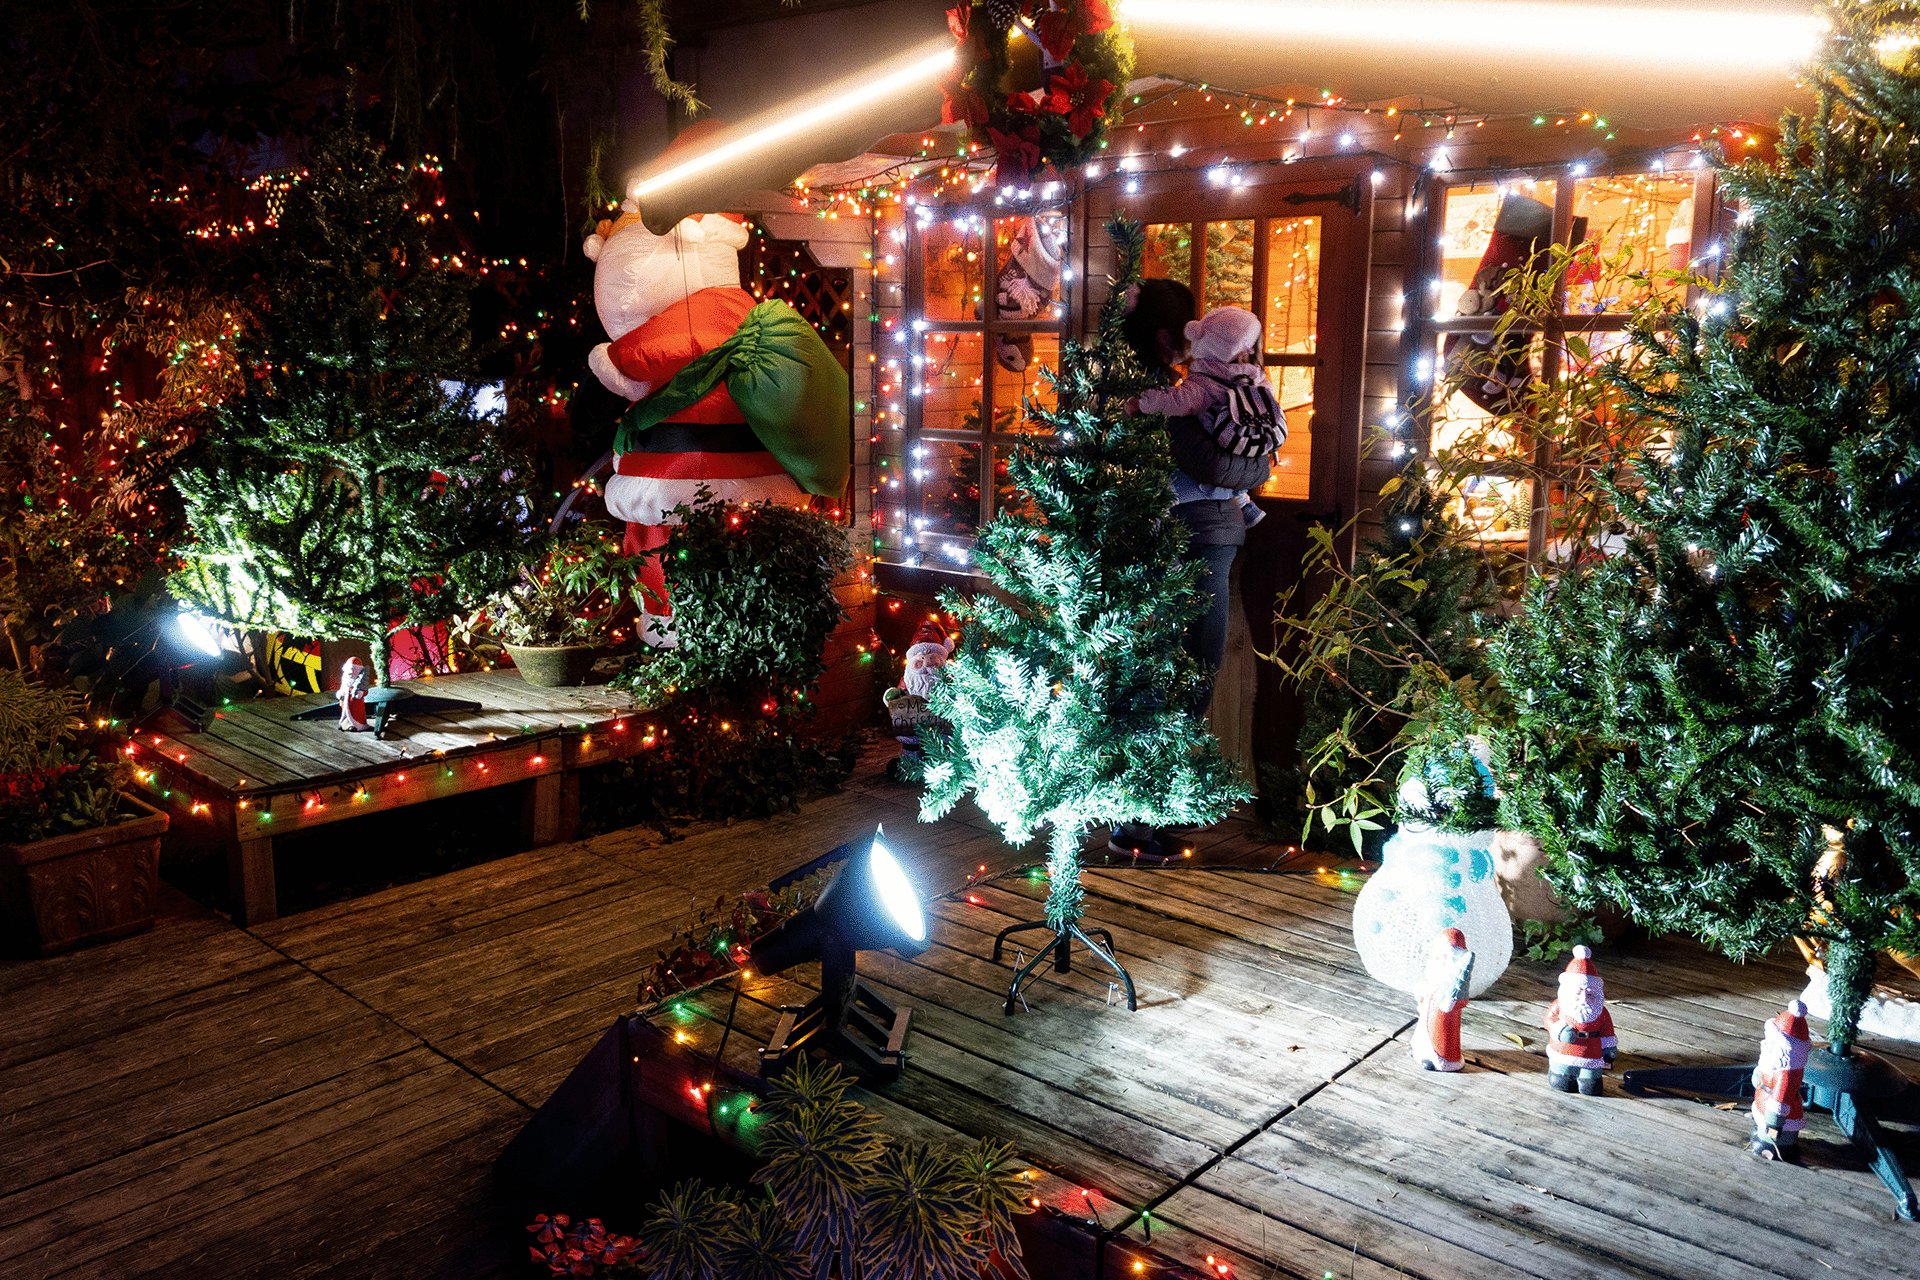 京王フローラルガーデン アンジェの恒例クリスマスイベント 関東のお出かけ情報ならオソトイコ